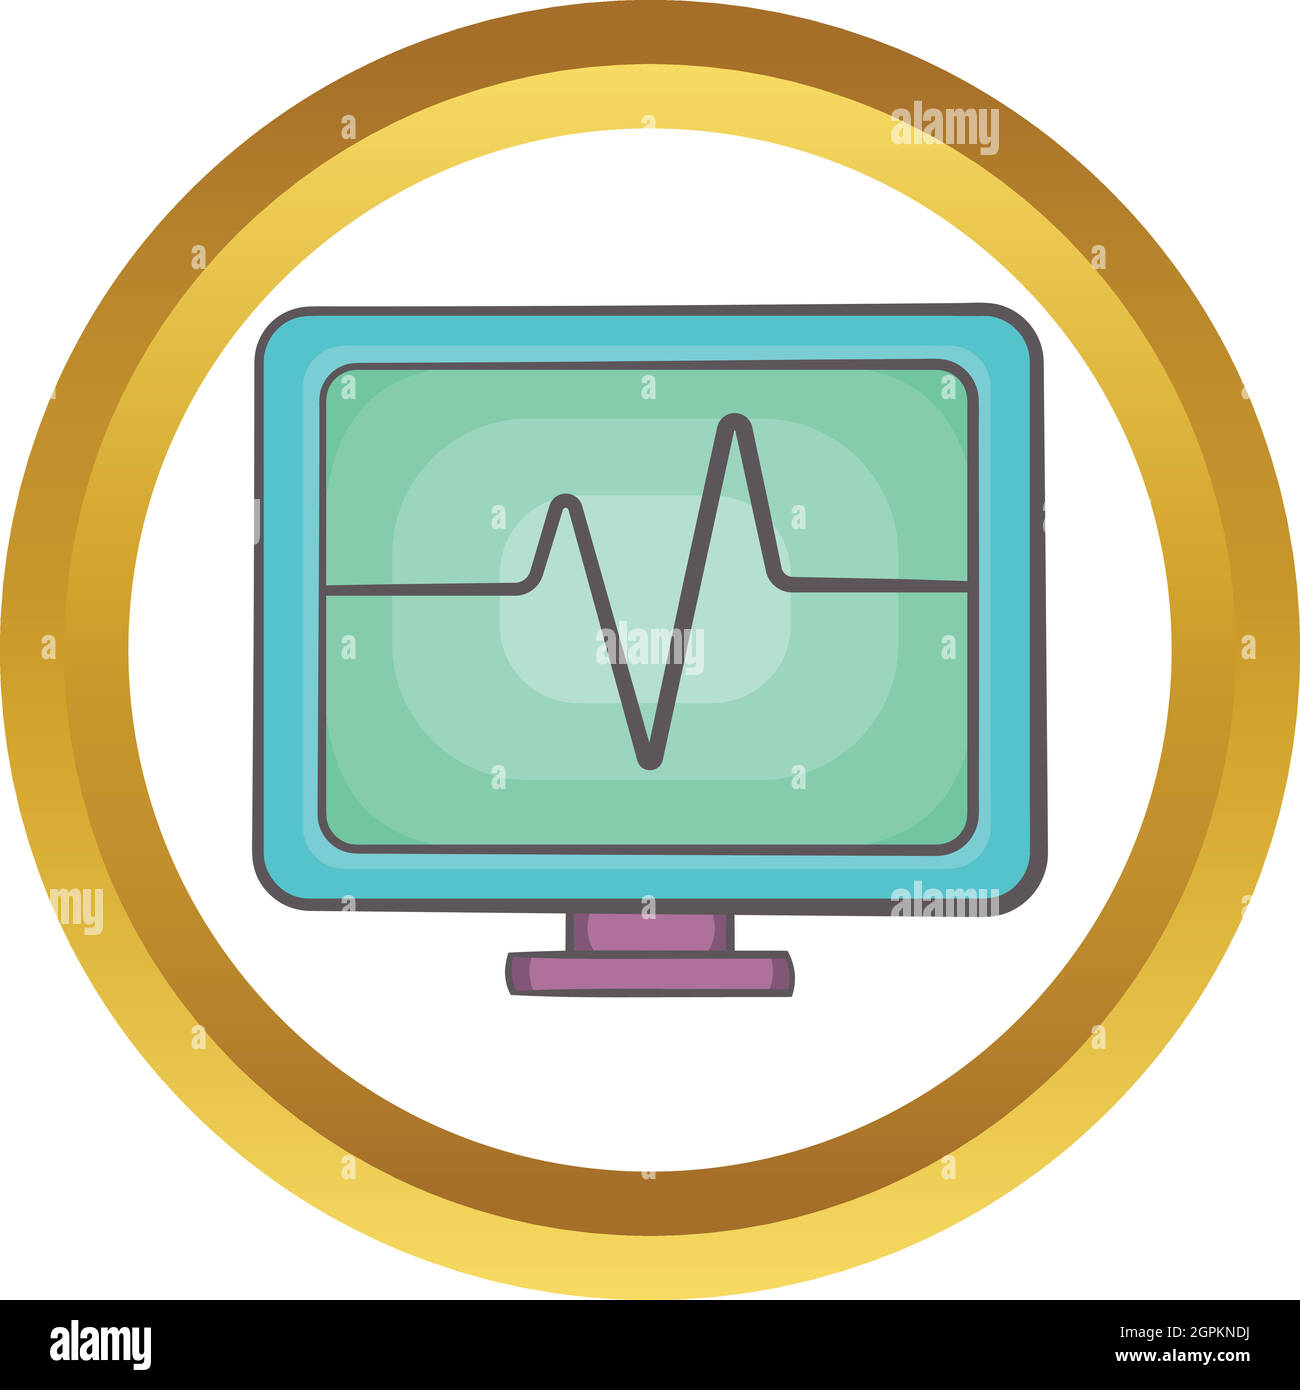 Electrocardiogram monitor vector icon Stock Vector